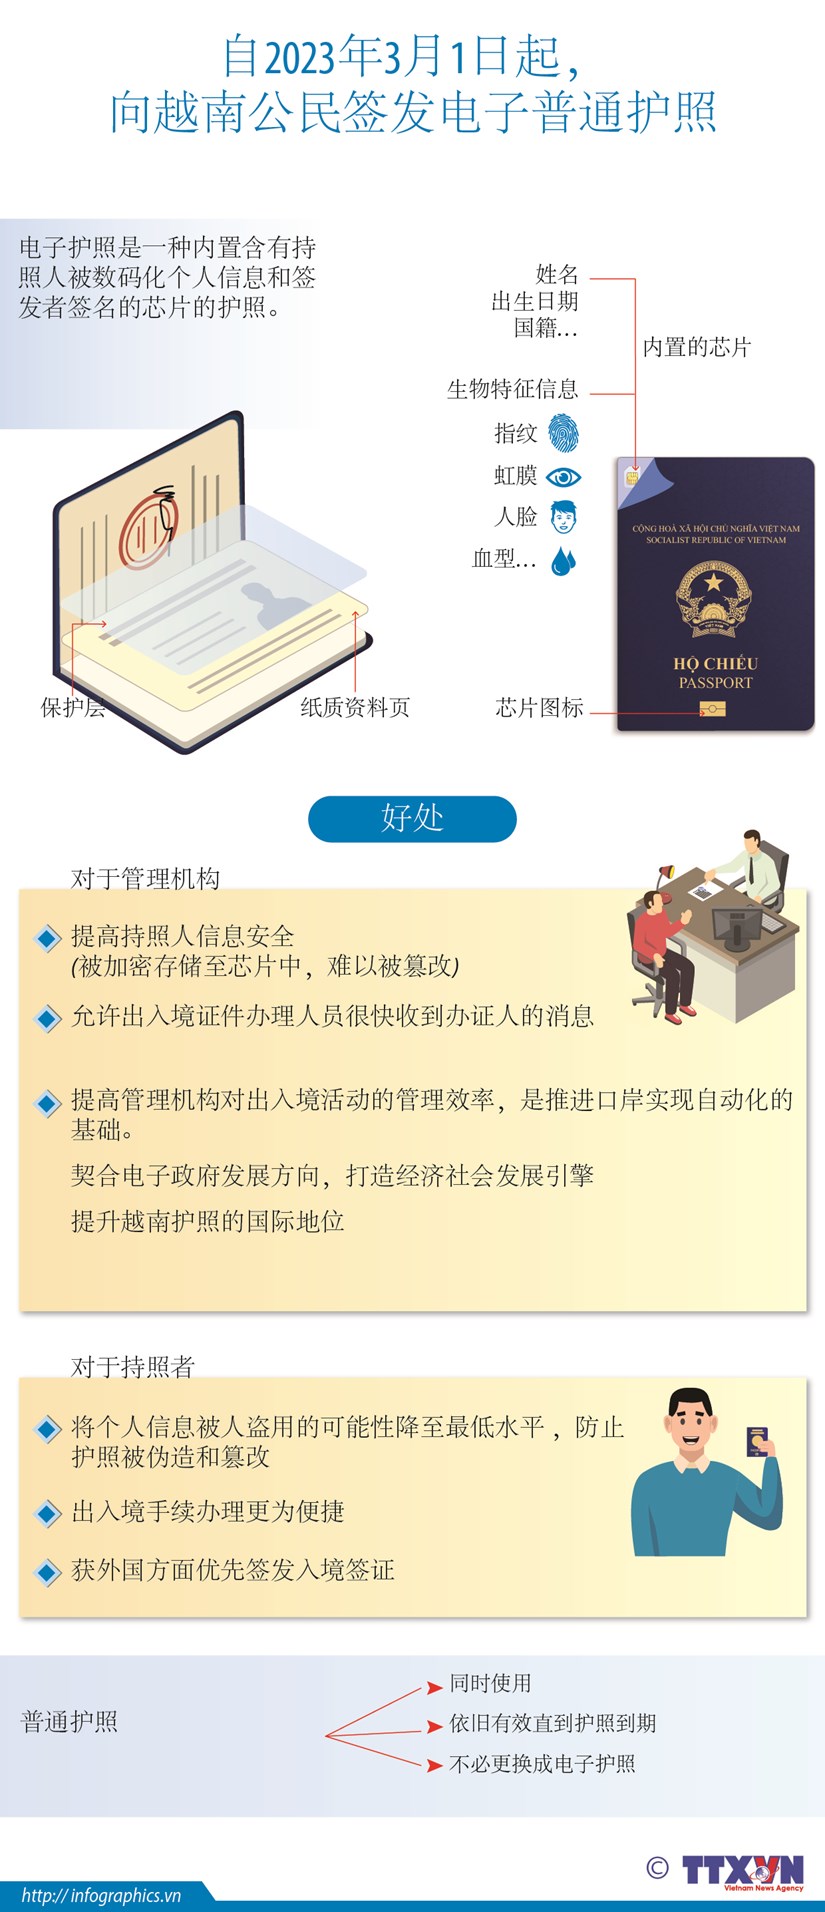 图表新闻：越南从2023年3月1日启用签发电子普通护照 hinh anh 1